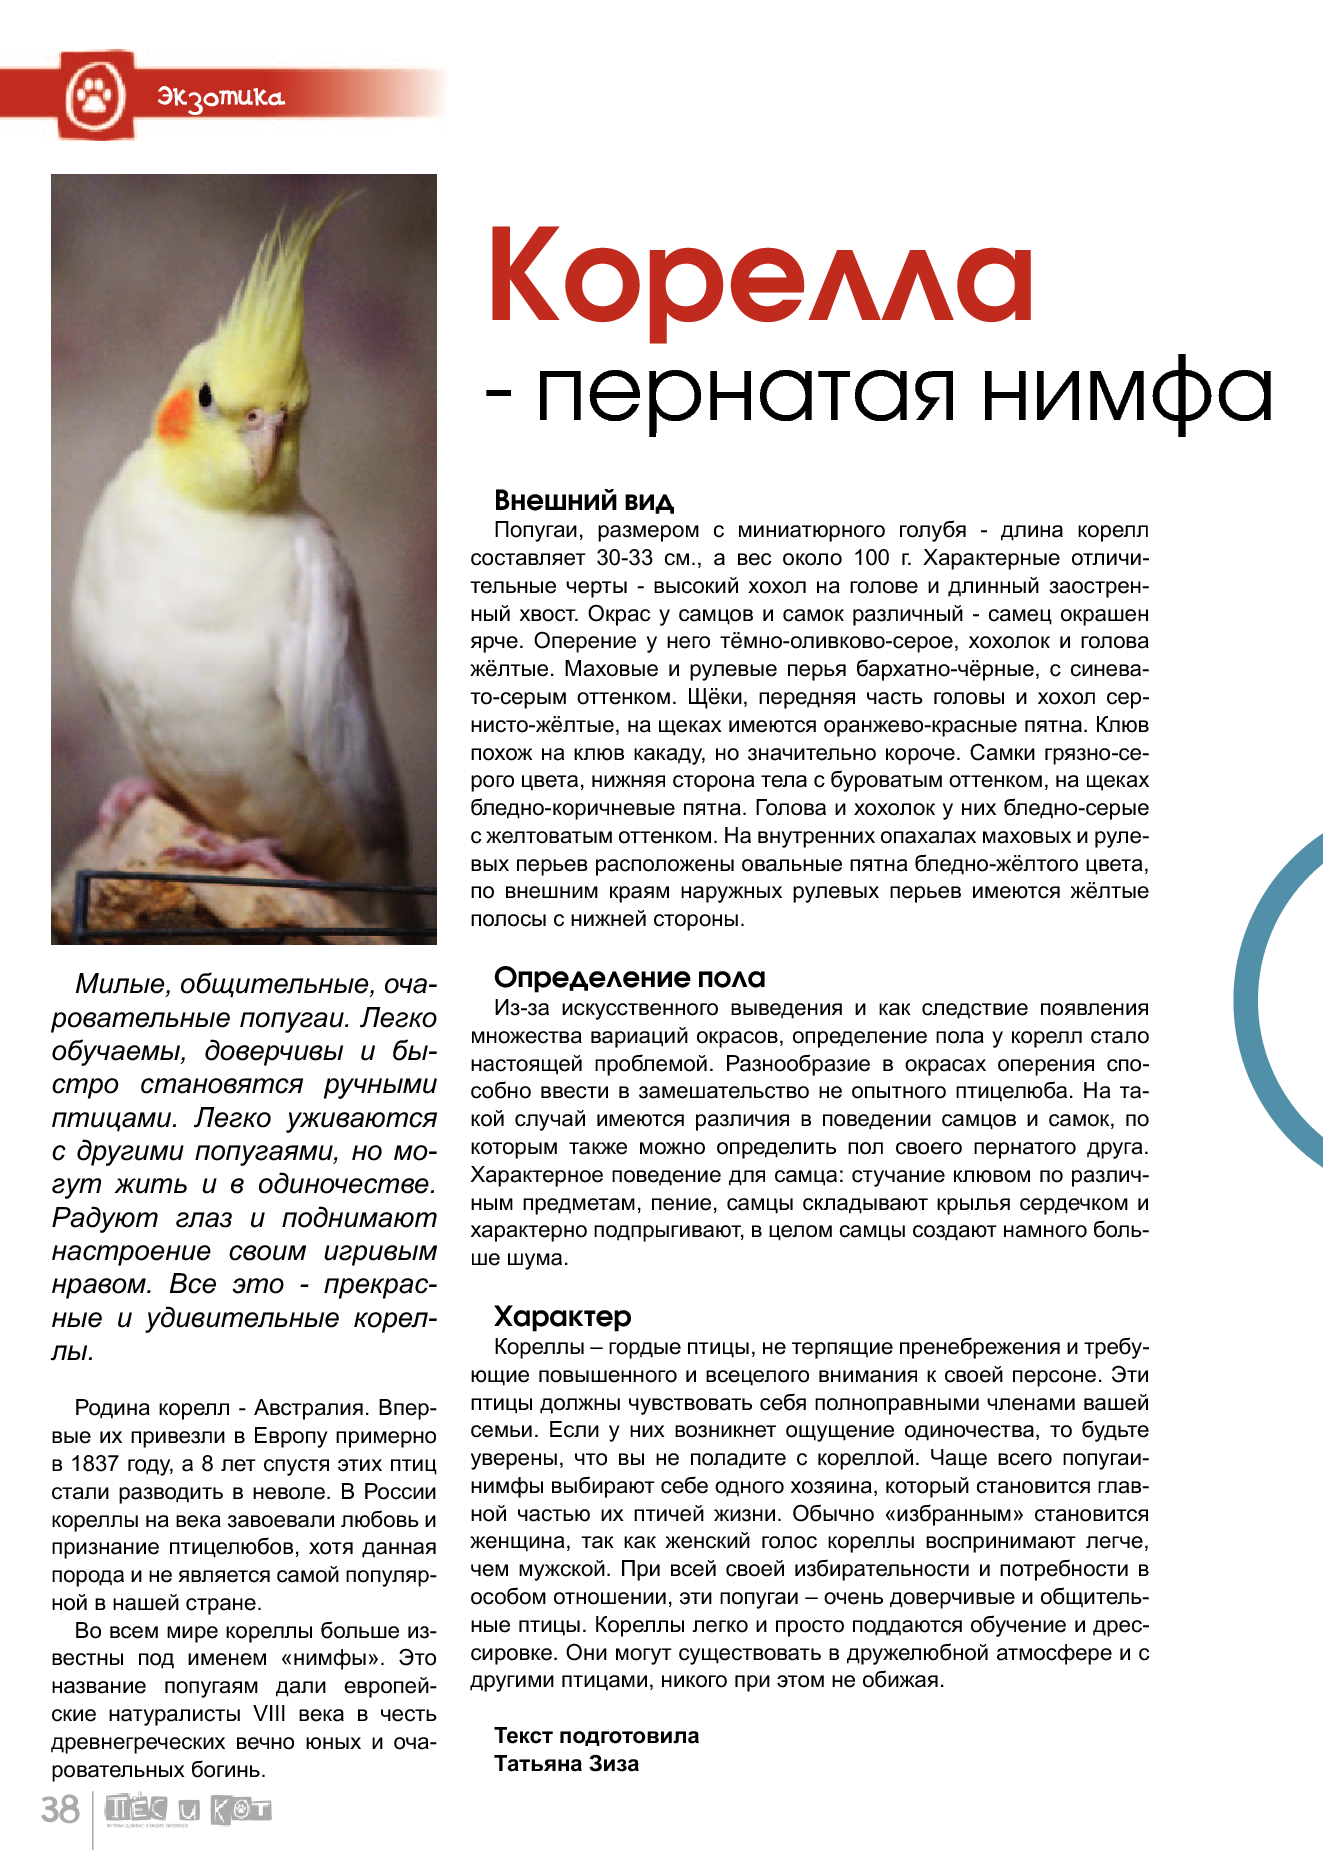 Попугай корелла (45 фото): описание породы корелла нимфа, размеры самок, самцов и птенцов, отзывы владельцев